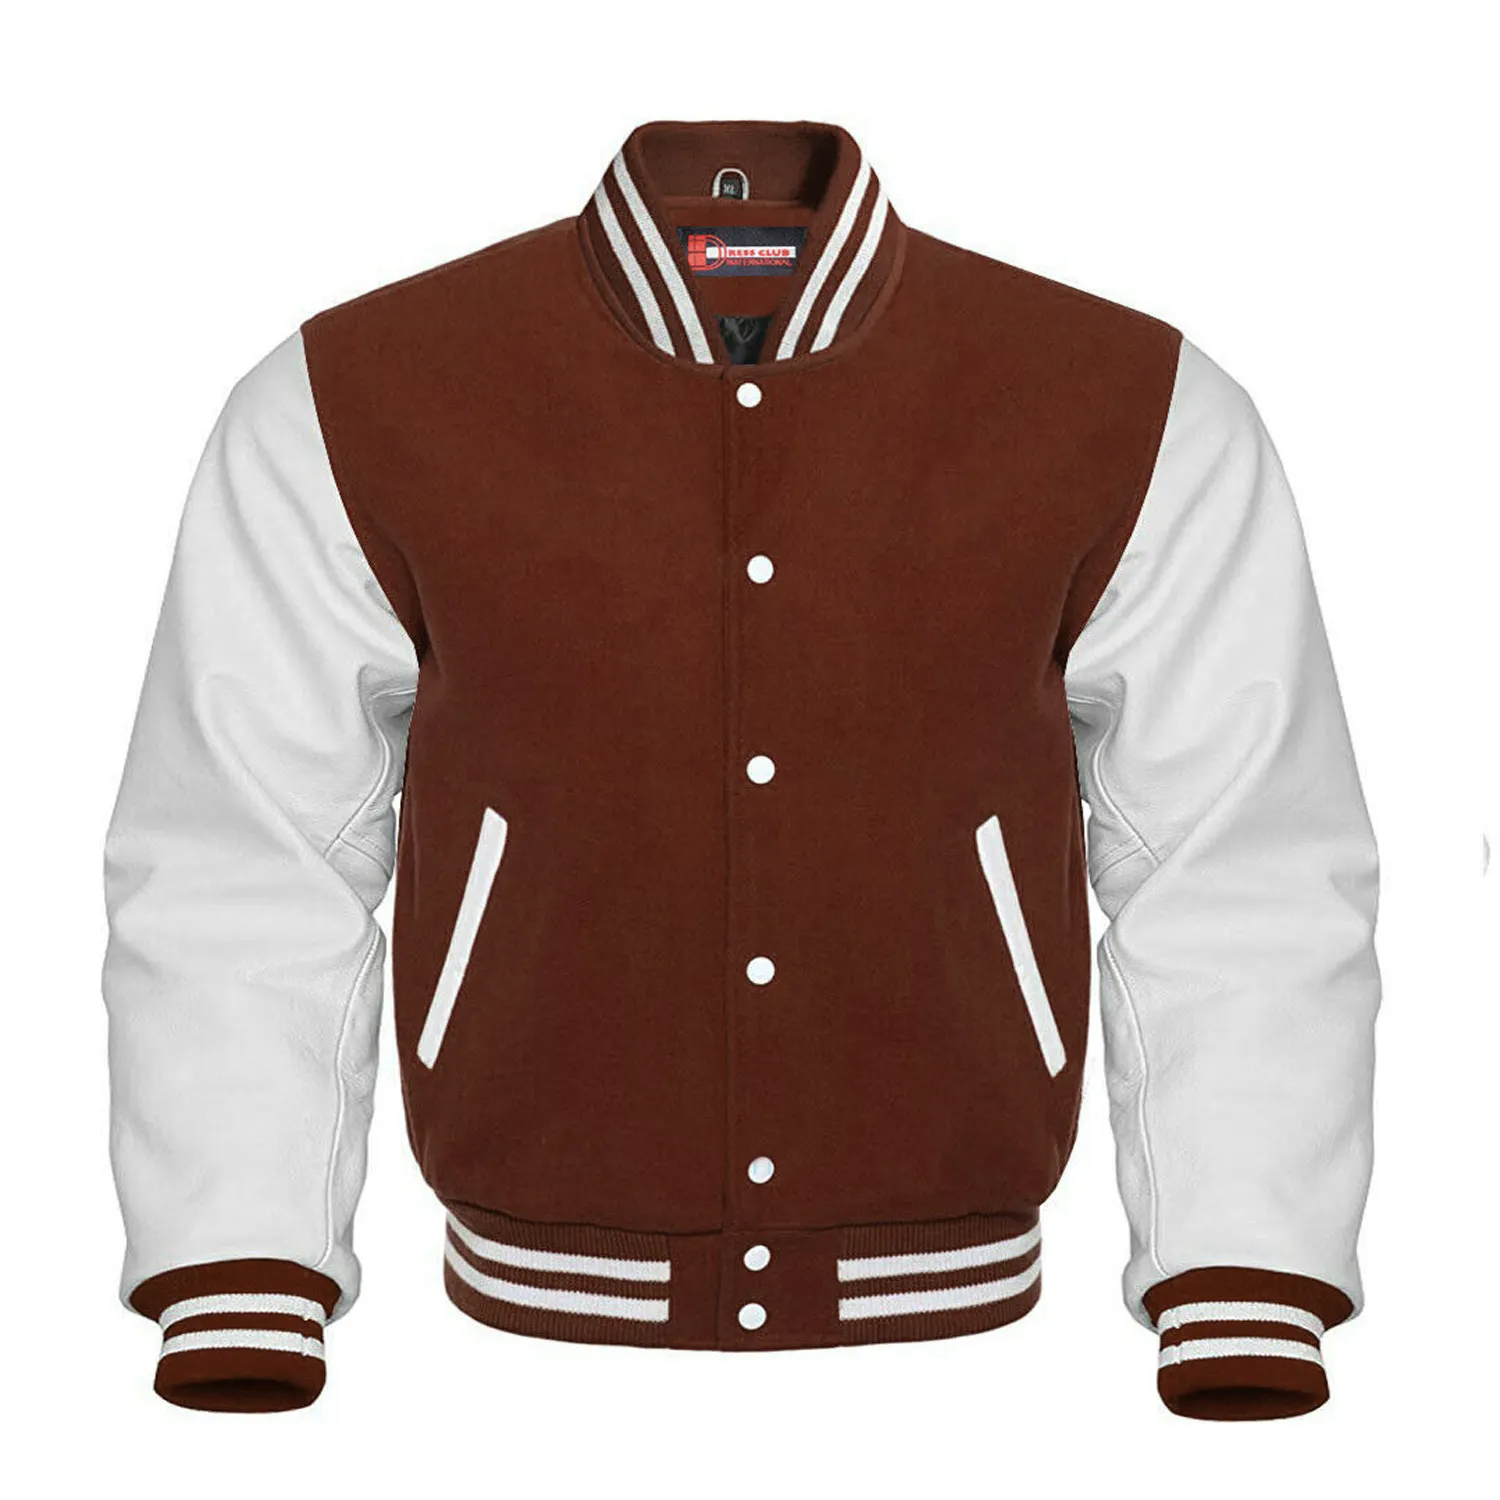 Últimas Lã Marrom & Branco Real Couro Collar Varsity Jacket/Atacado Hot Inverno Temporada Bordado Patch Varsity Casacos